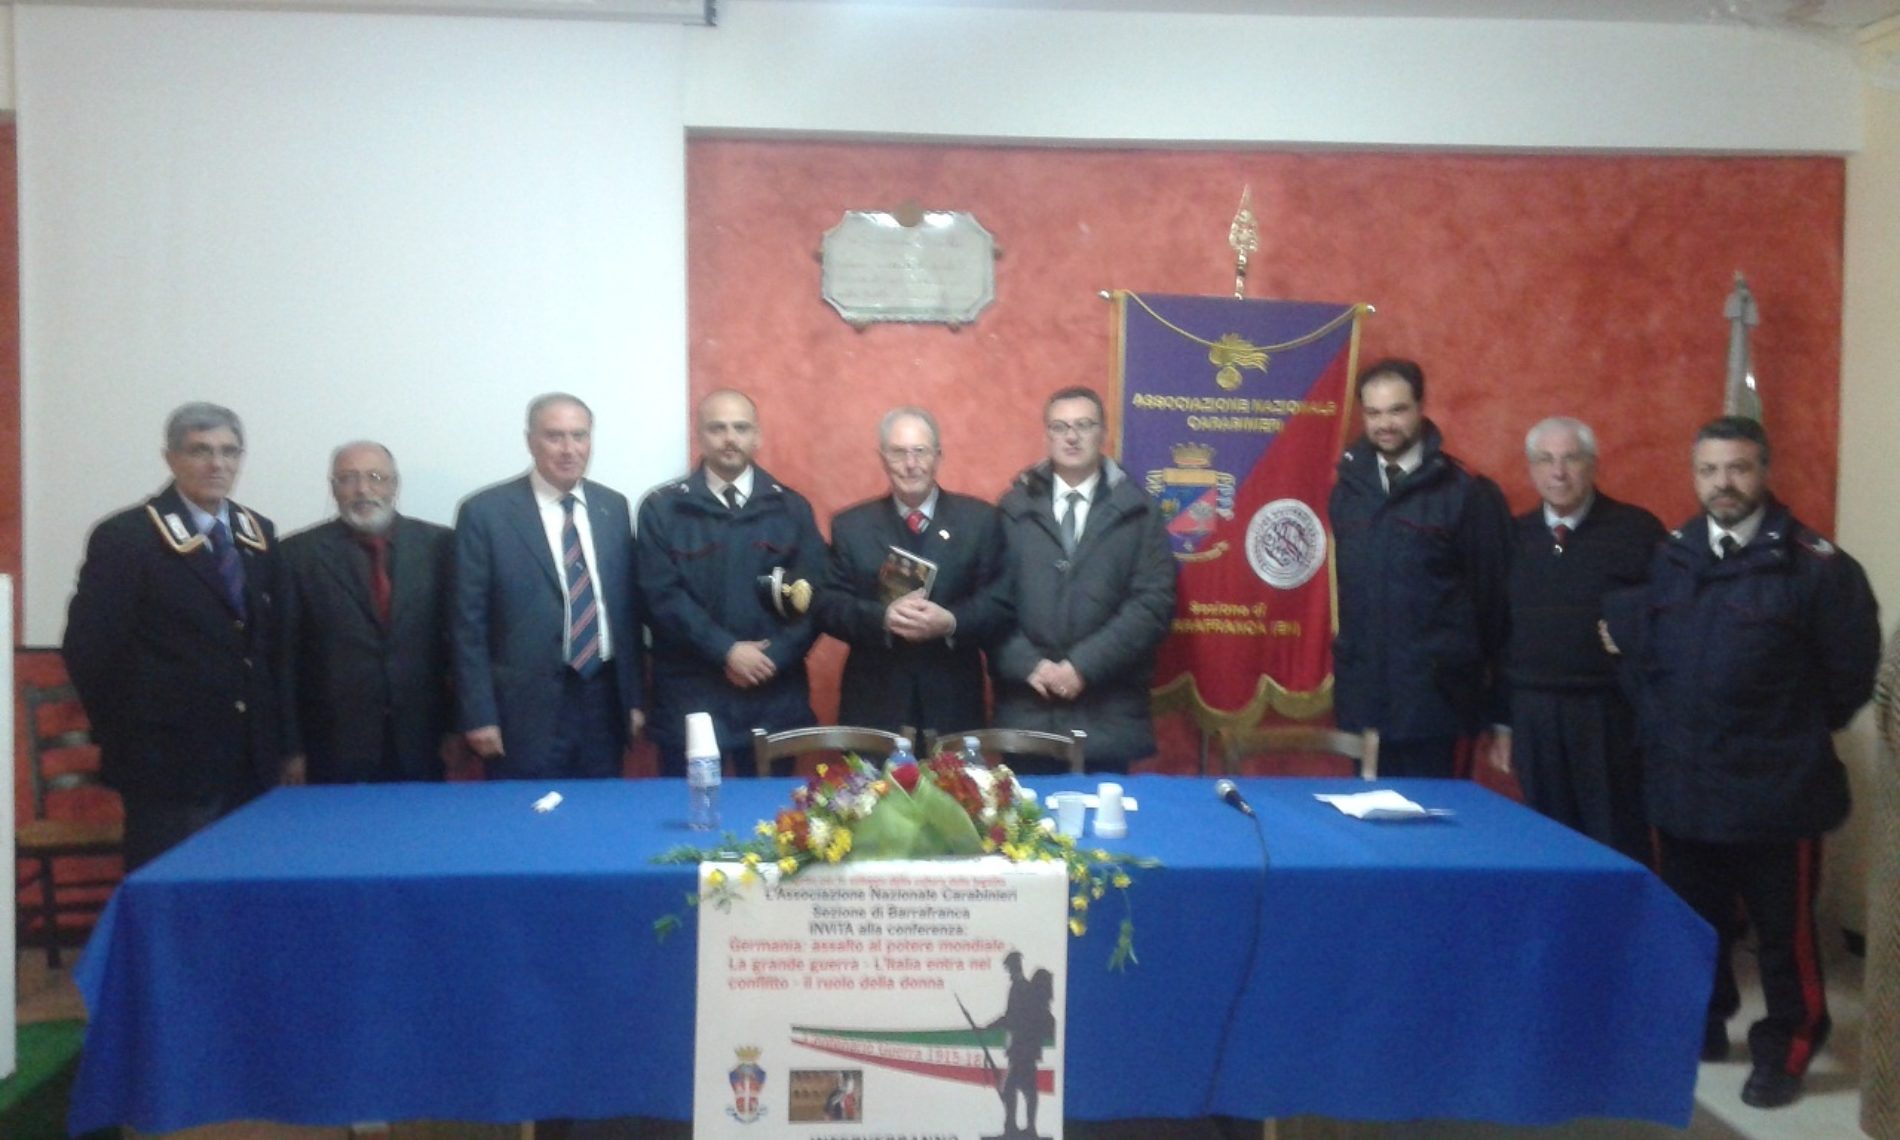 Conferenza sulla Grande Guerra organizzata dall’associazione carabinieri